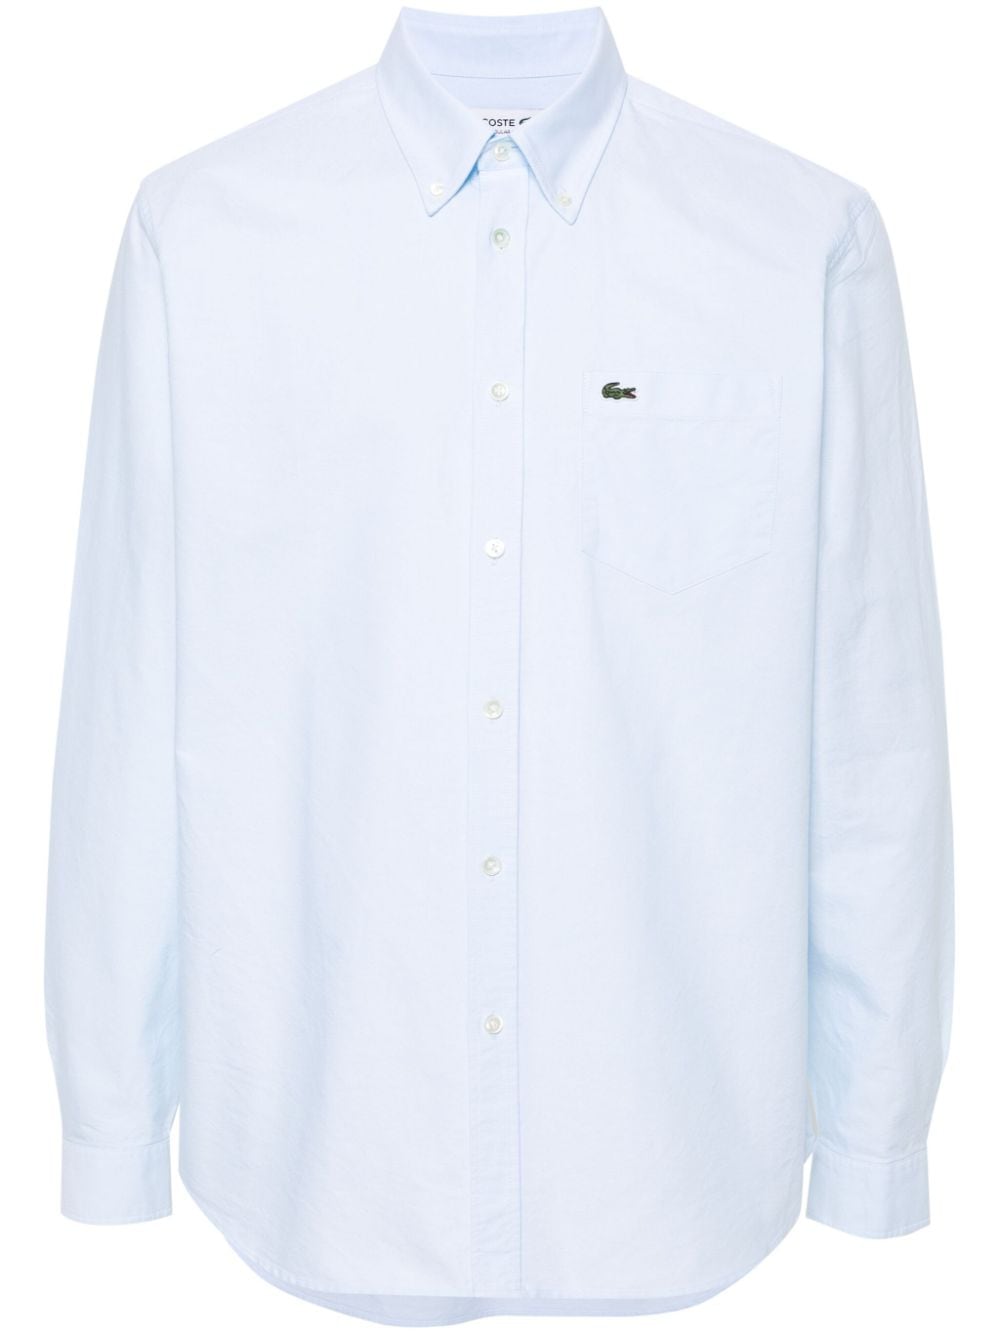 lacoste chemise en coton à patch logo - bleu